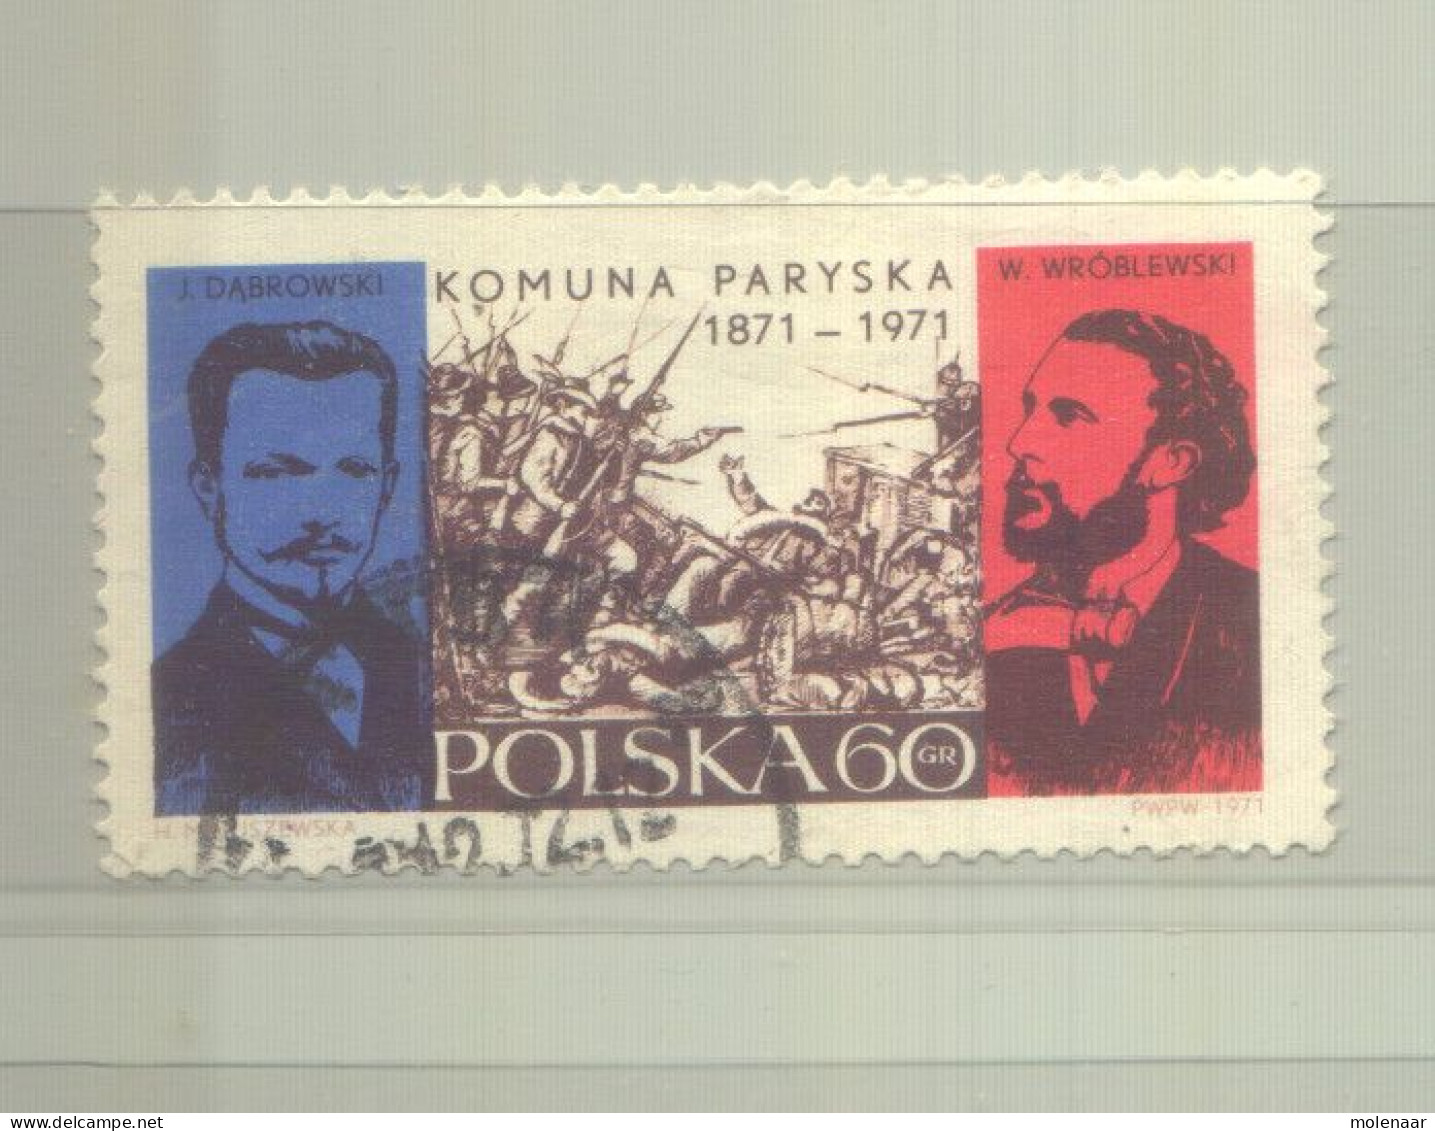 Postzegels > Europa > Polen > 1944-.... Republiek > 1981-90 > Gebruikt 2055 (12191) - Gebraucht